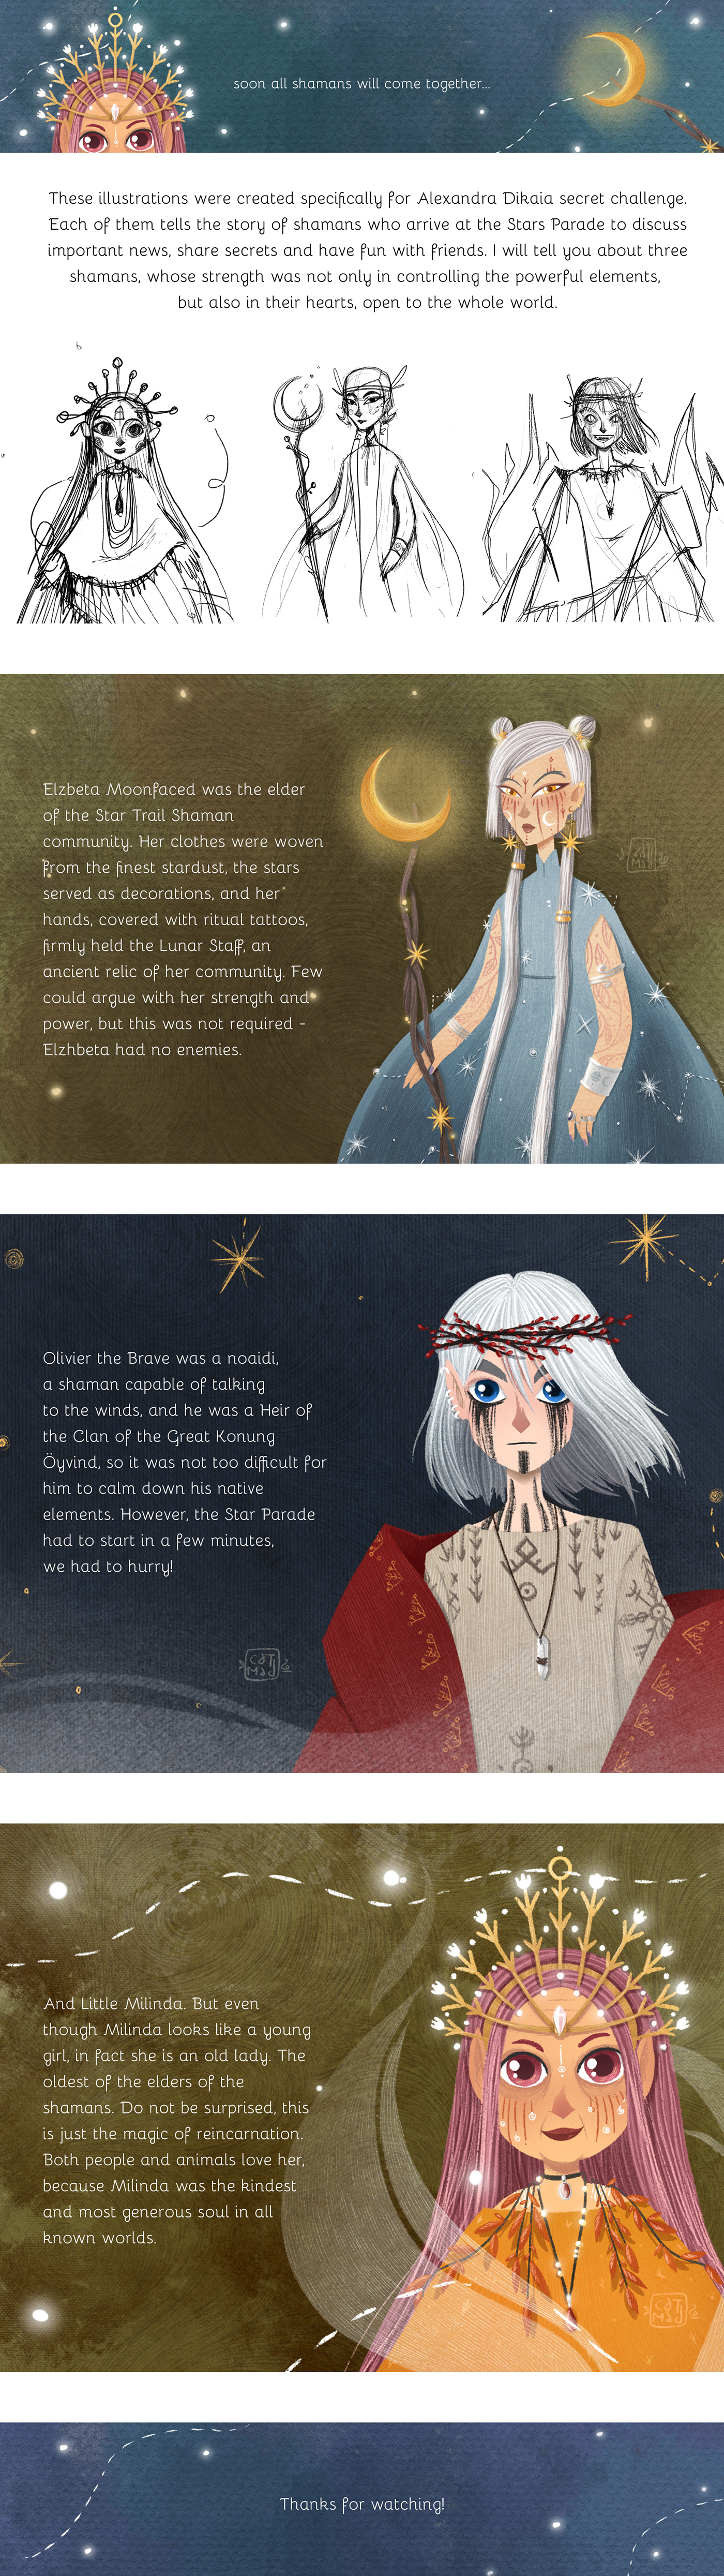 bookillustration challenge Character design  children illustration fairytale ILLUSTRATION  Magic   mythology